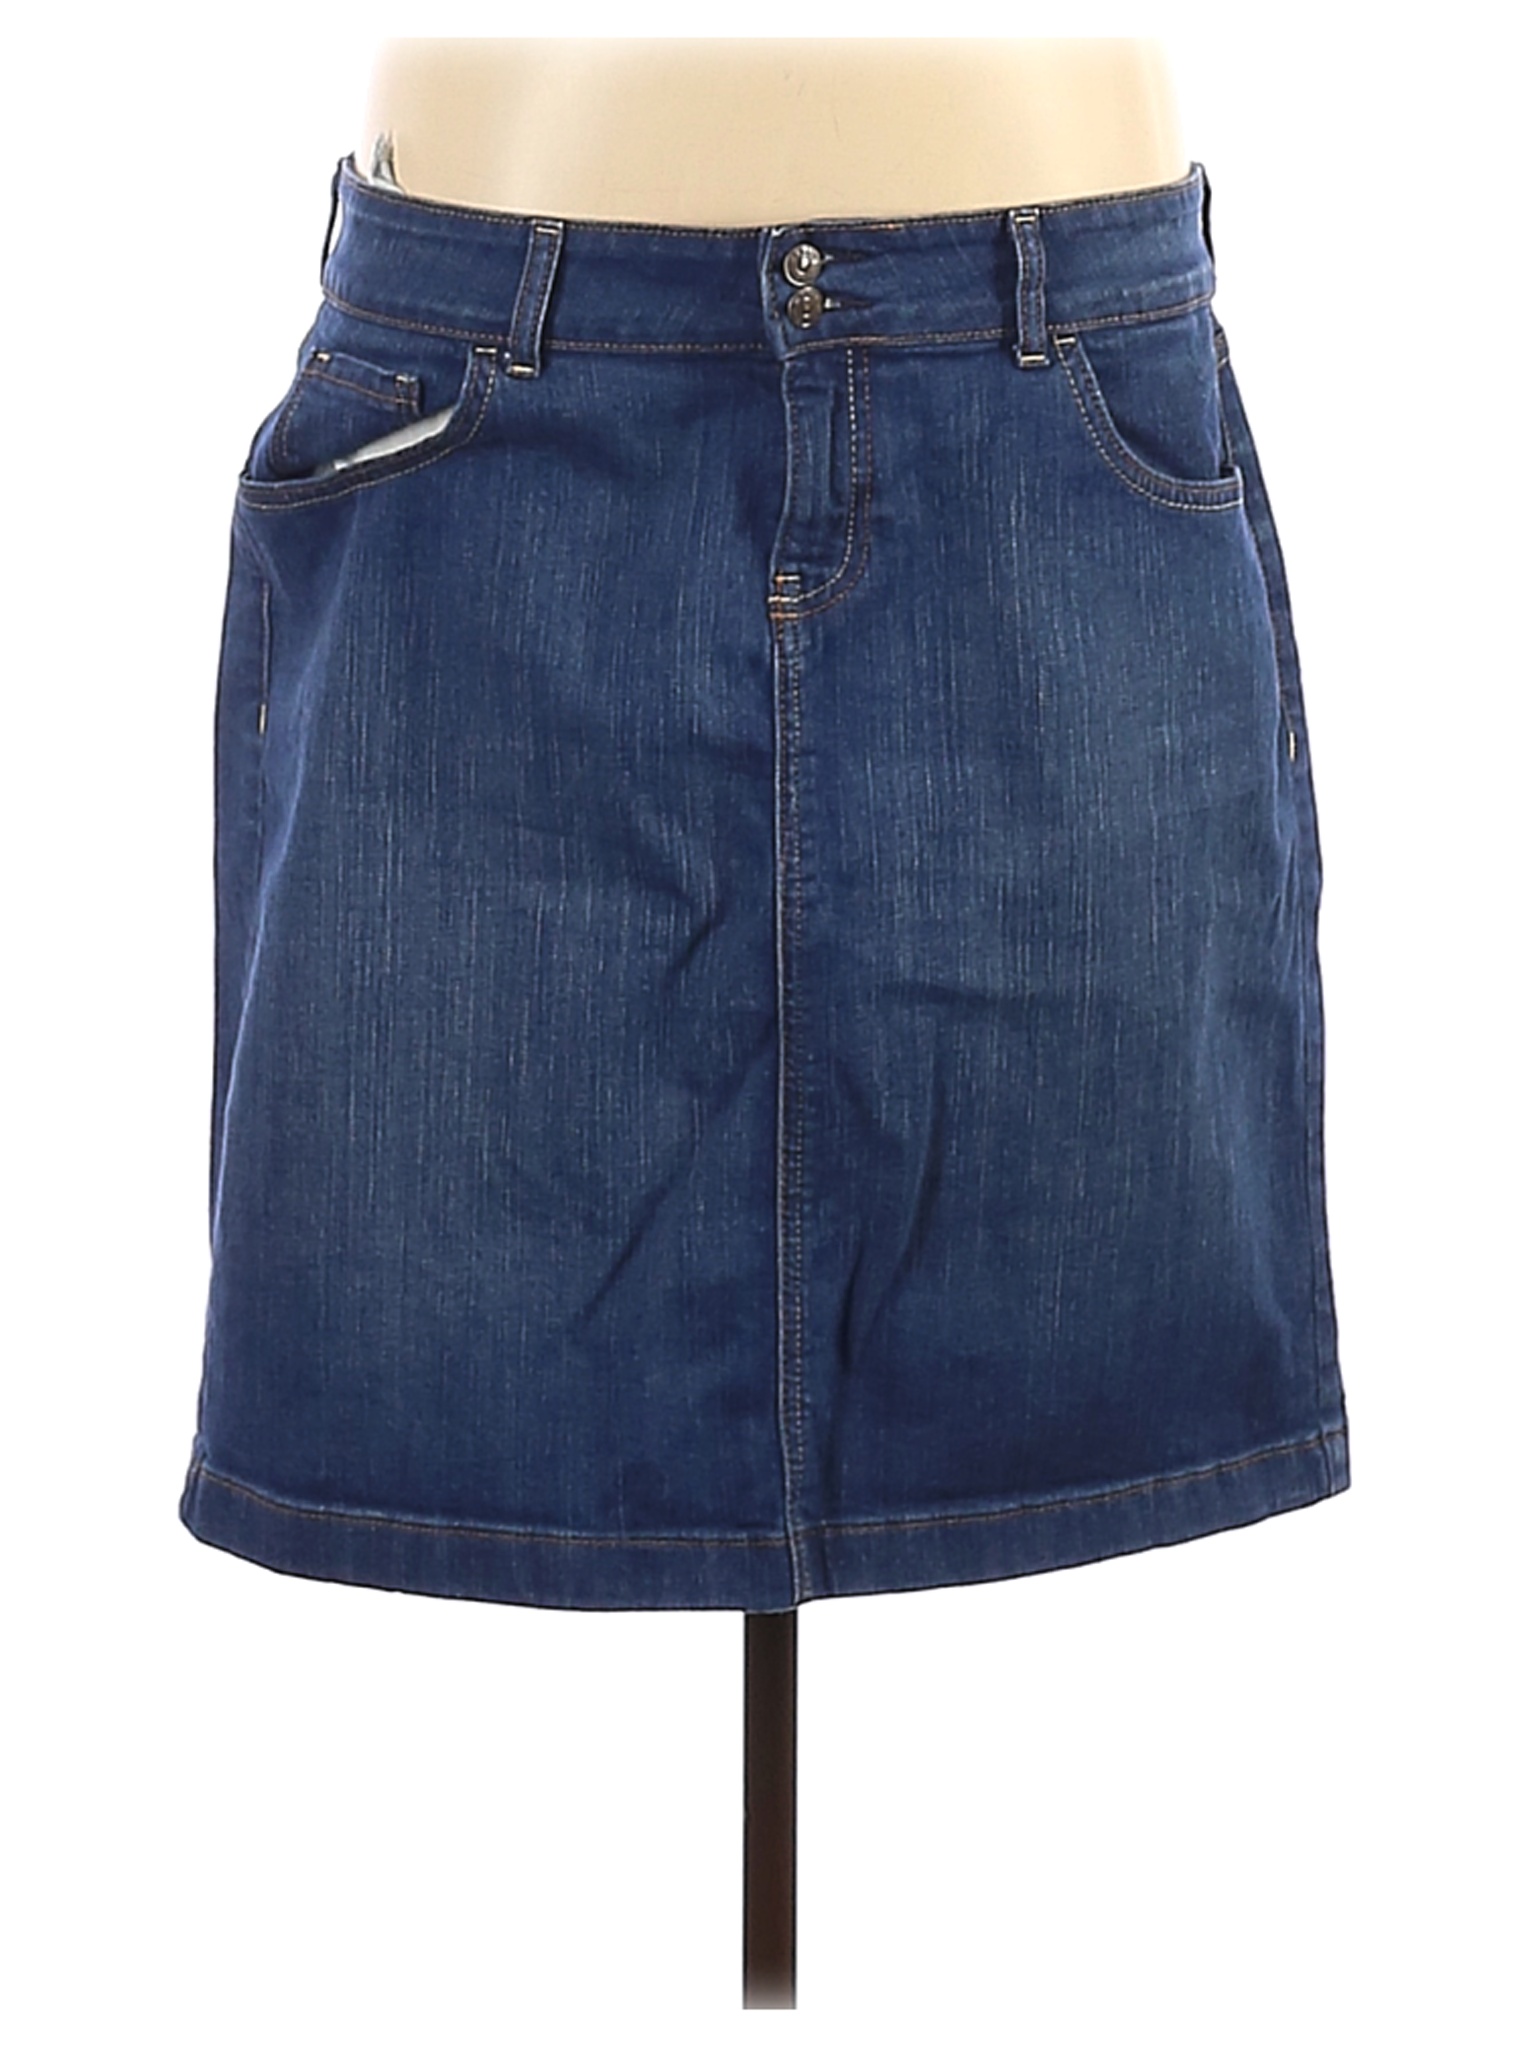 Old Navy Women Blue Denim Skirt 12 | eBay